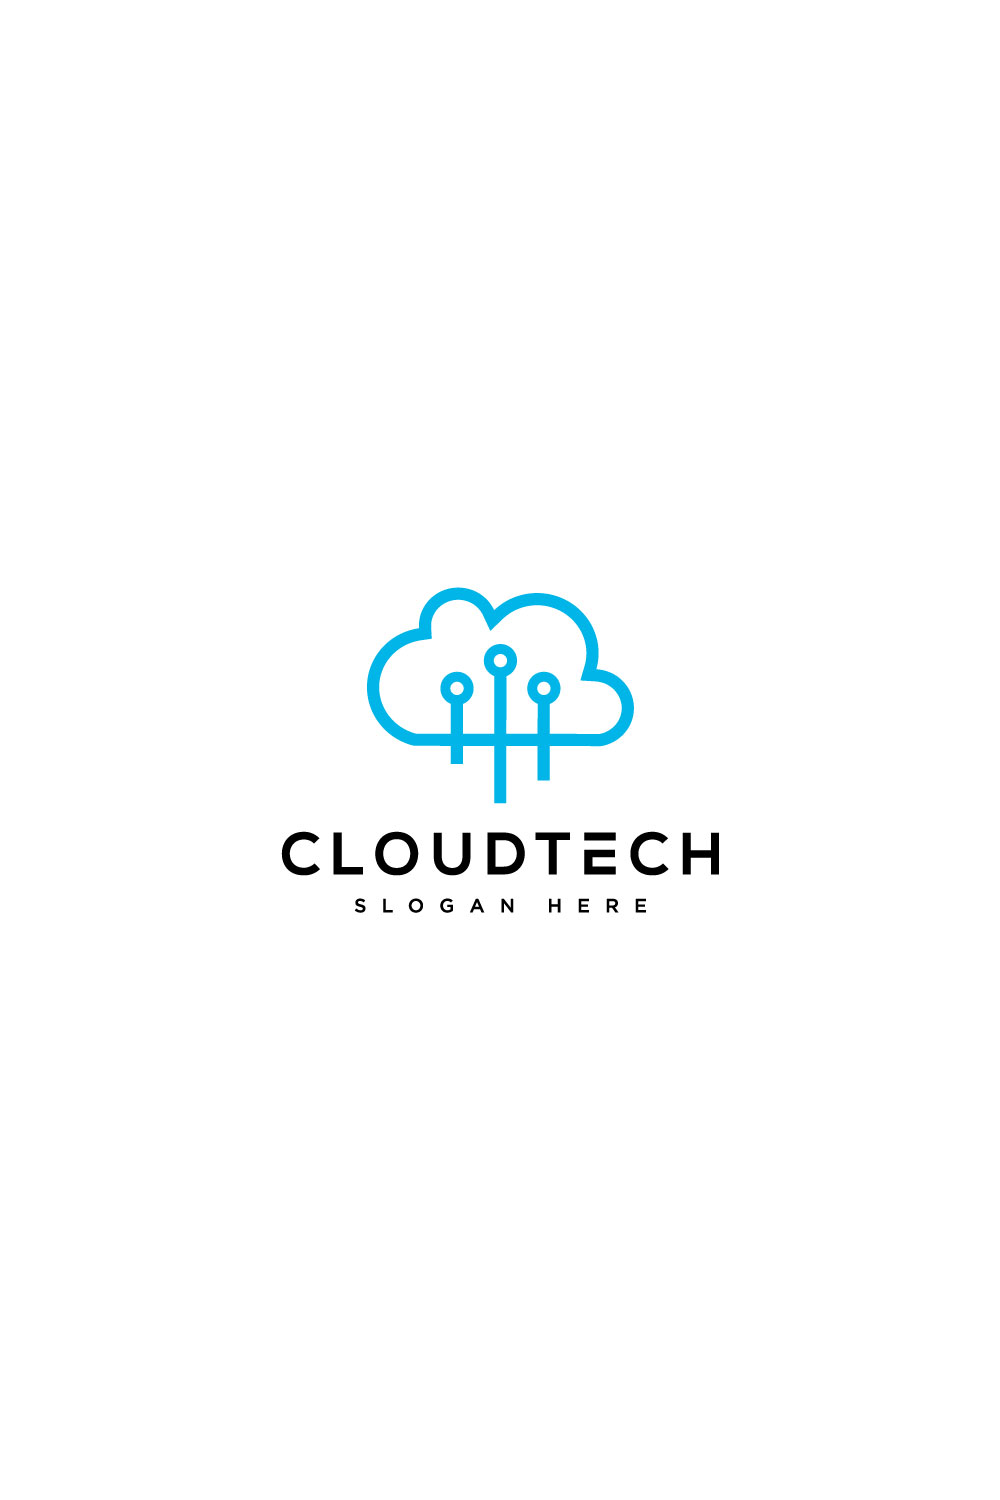 Cloud Tech Logo Vector - Pinterest.